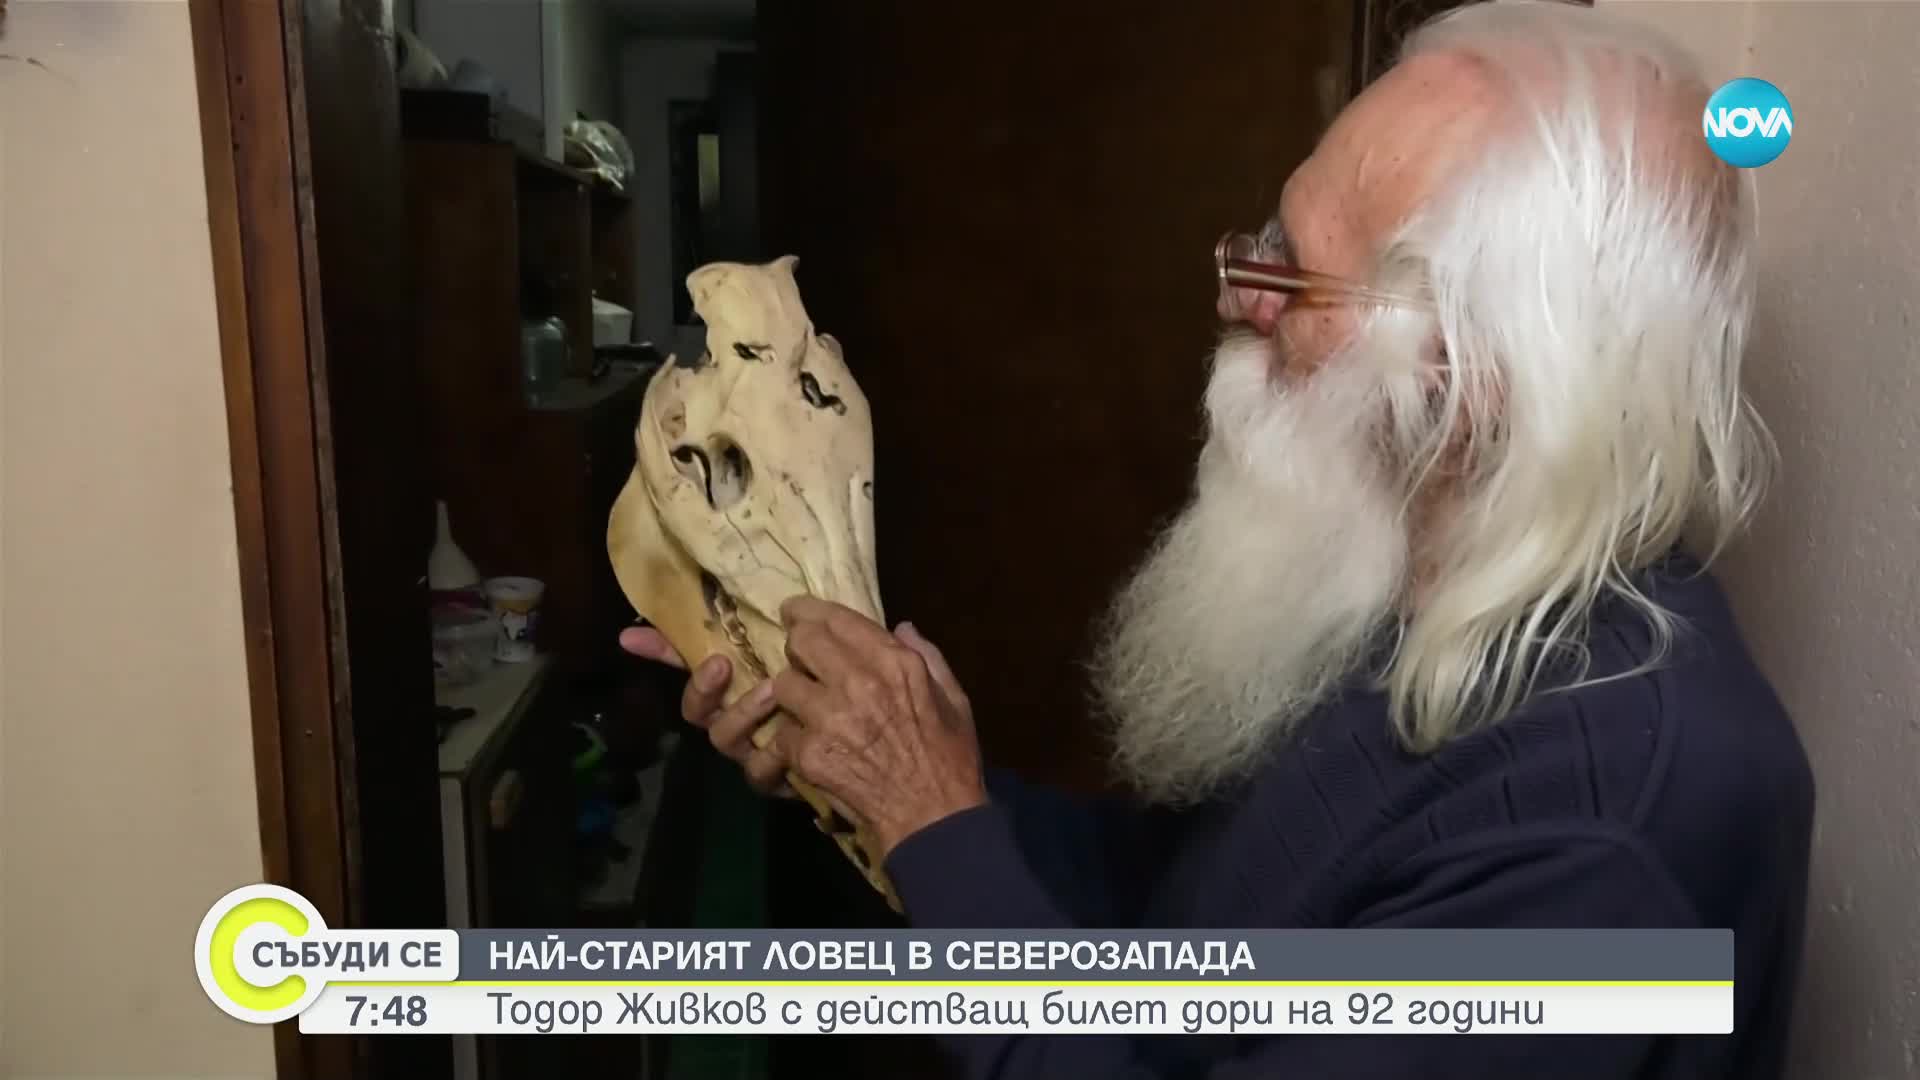 Тодор Живков - най-старият ловец в Северозапада